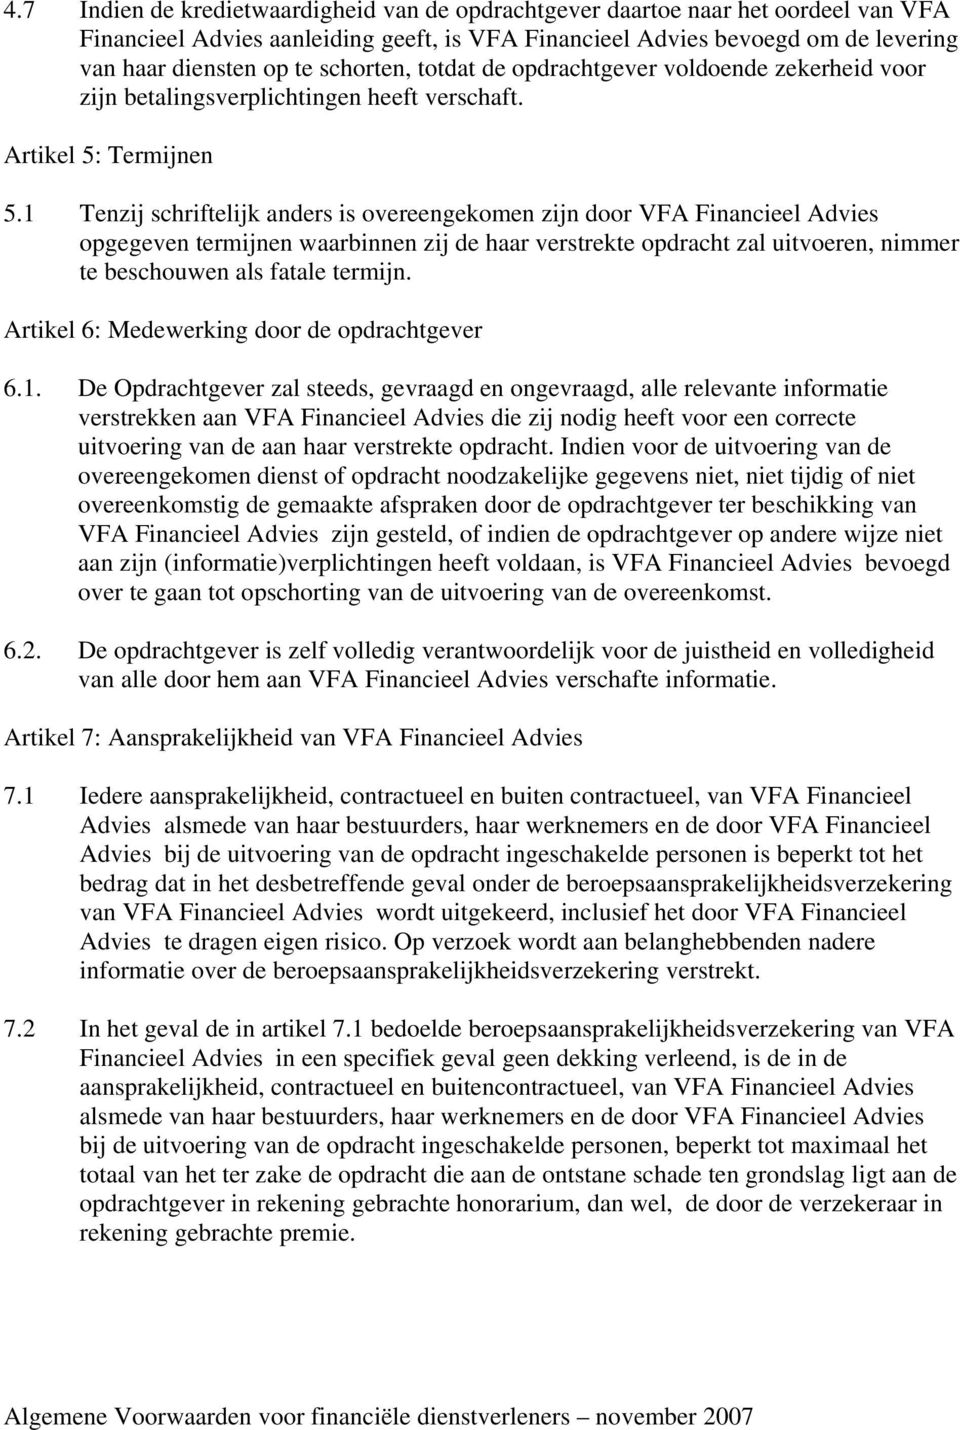 1 Tenzij schriftelijk anders is overeengekomen zijn door VFA Financieel Advies opgegeven termijnen waarbinnen zij de haar verstrekte opdracht zal uitvoeren, nimmer te beschouwen als fatale termijn.